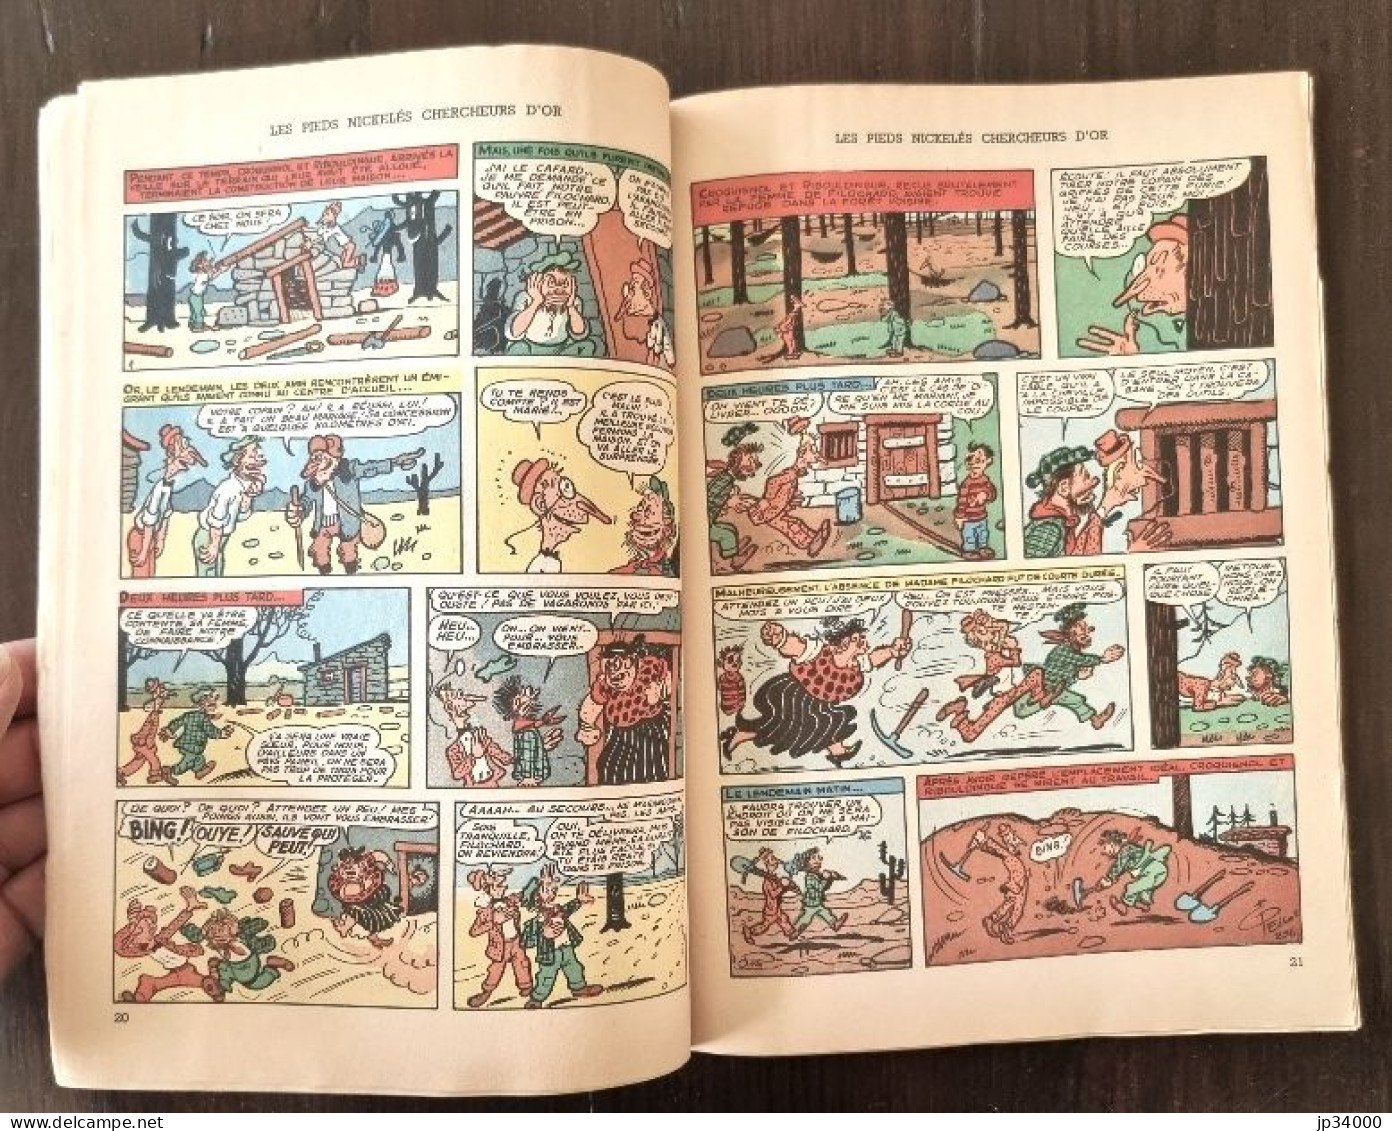 Les Pieds Nickelés Chercheurs D'or N°19 Publié Chez SPE. Edition 1966-Pellos (A) - Pieds Nickelés, Les